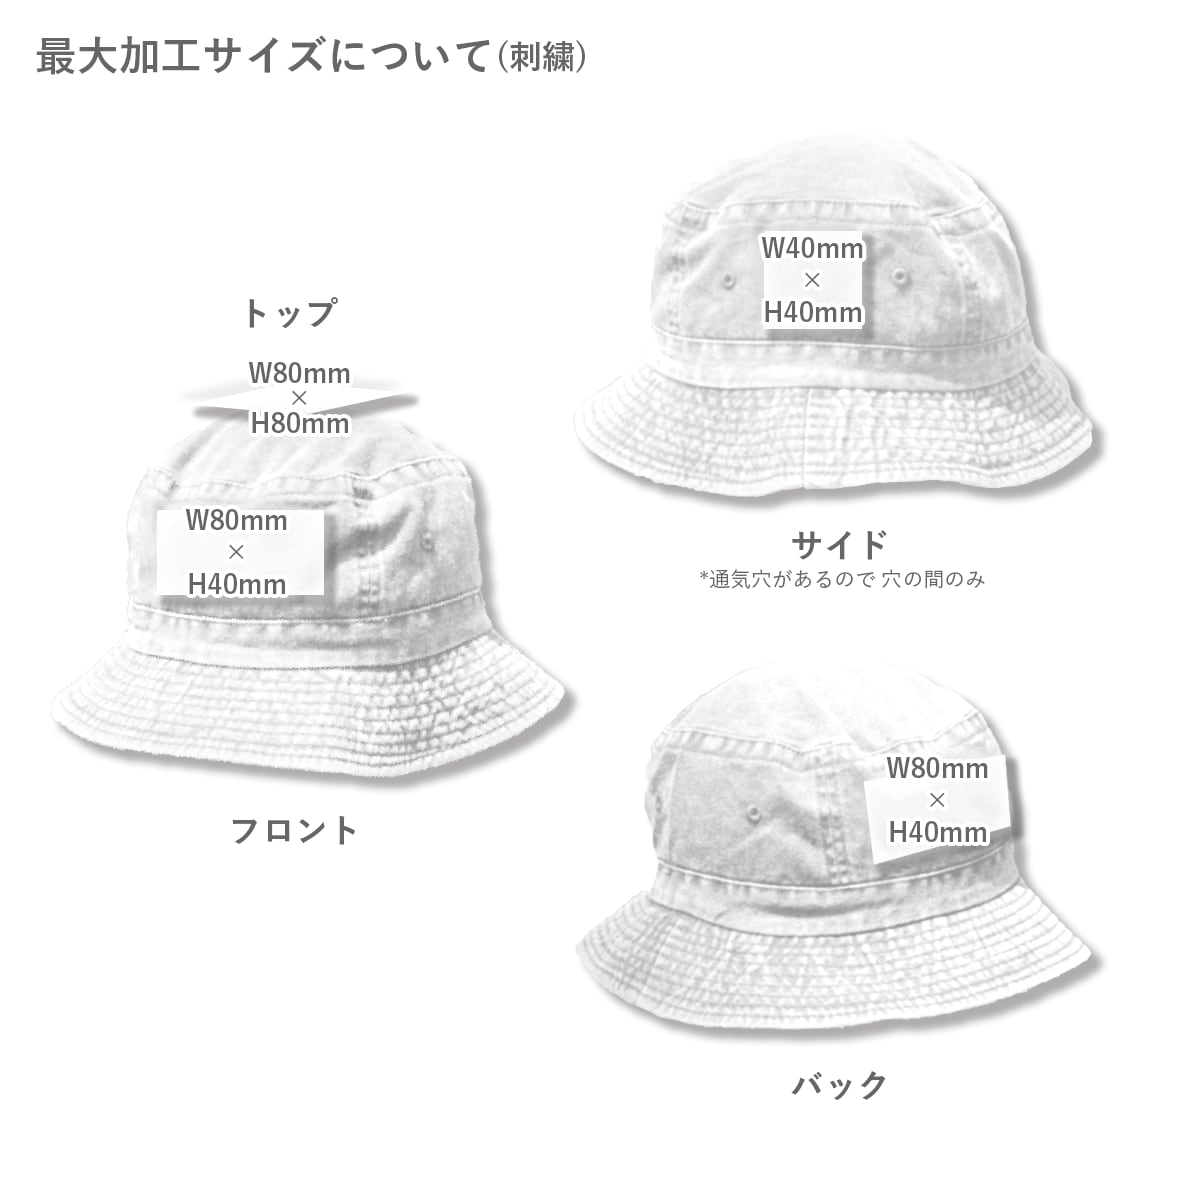 【在庫限り】 Cameo Sports カメオスポーツ Bucket Hat (品番CS-111)